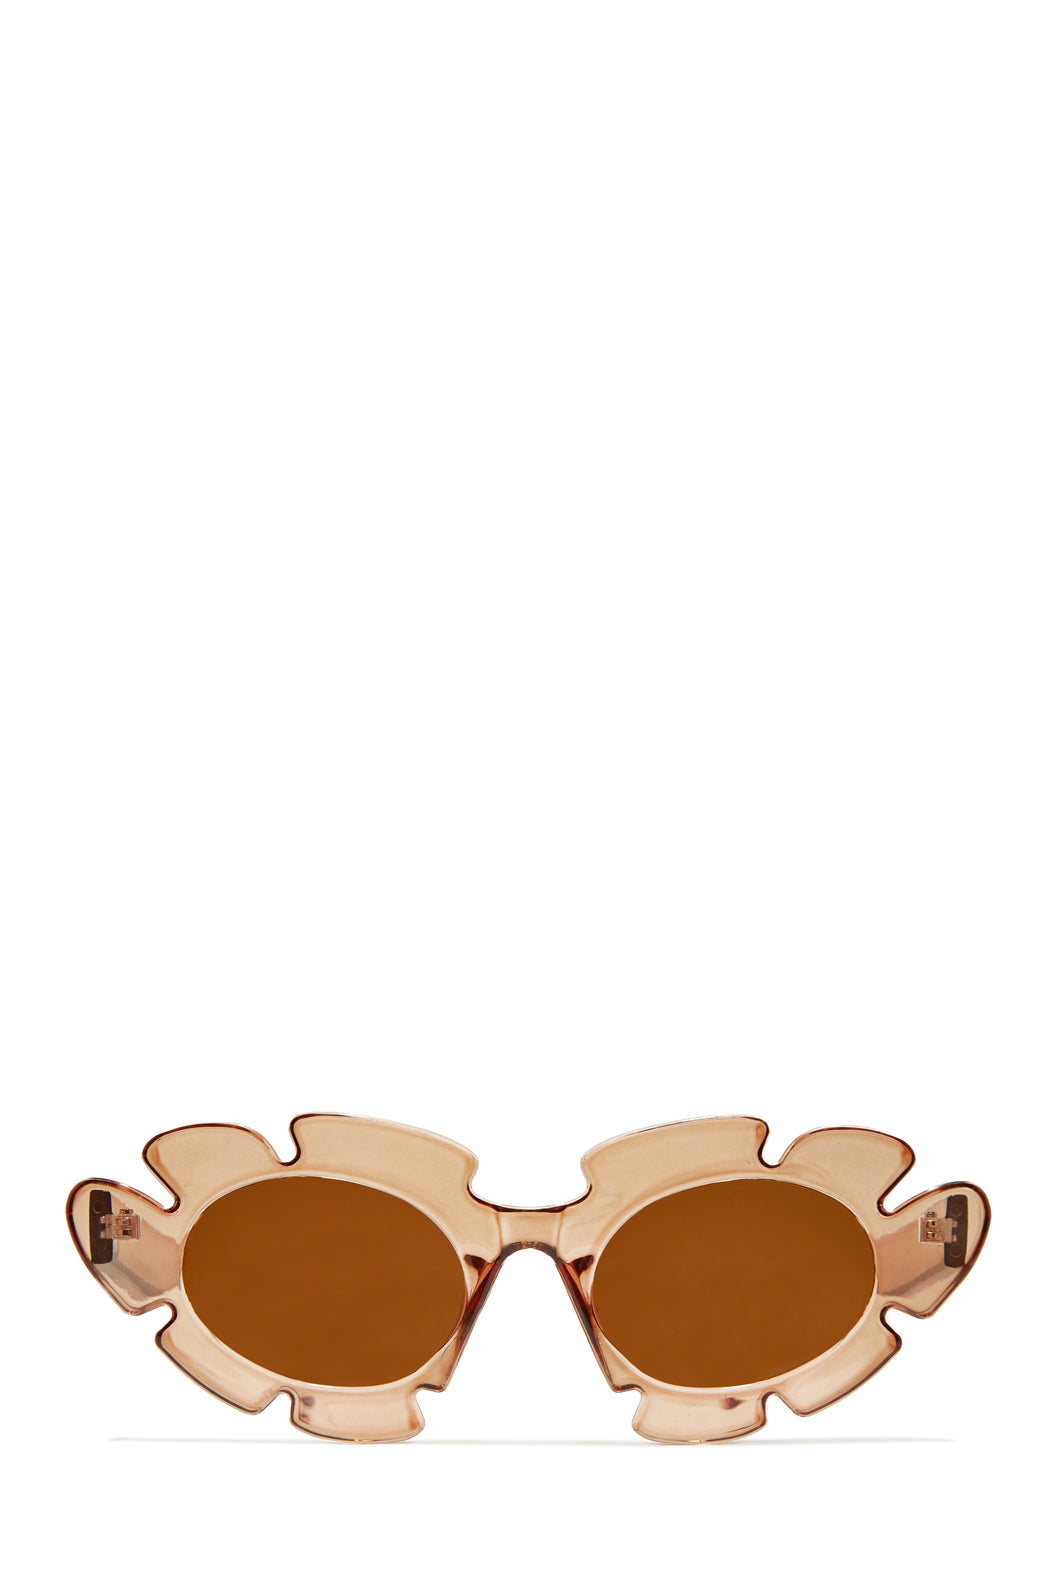 Weekend Flirt Unique Standout Frame Sunglasses - Tan